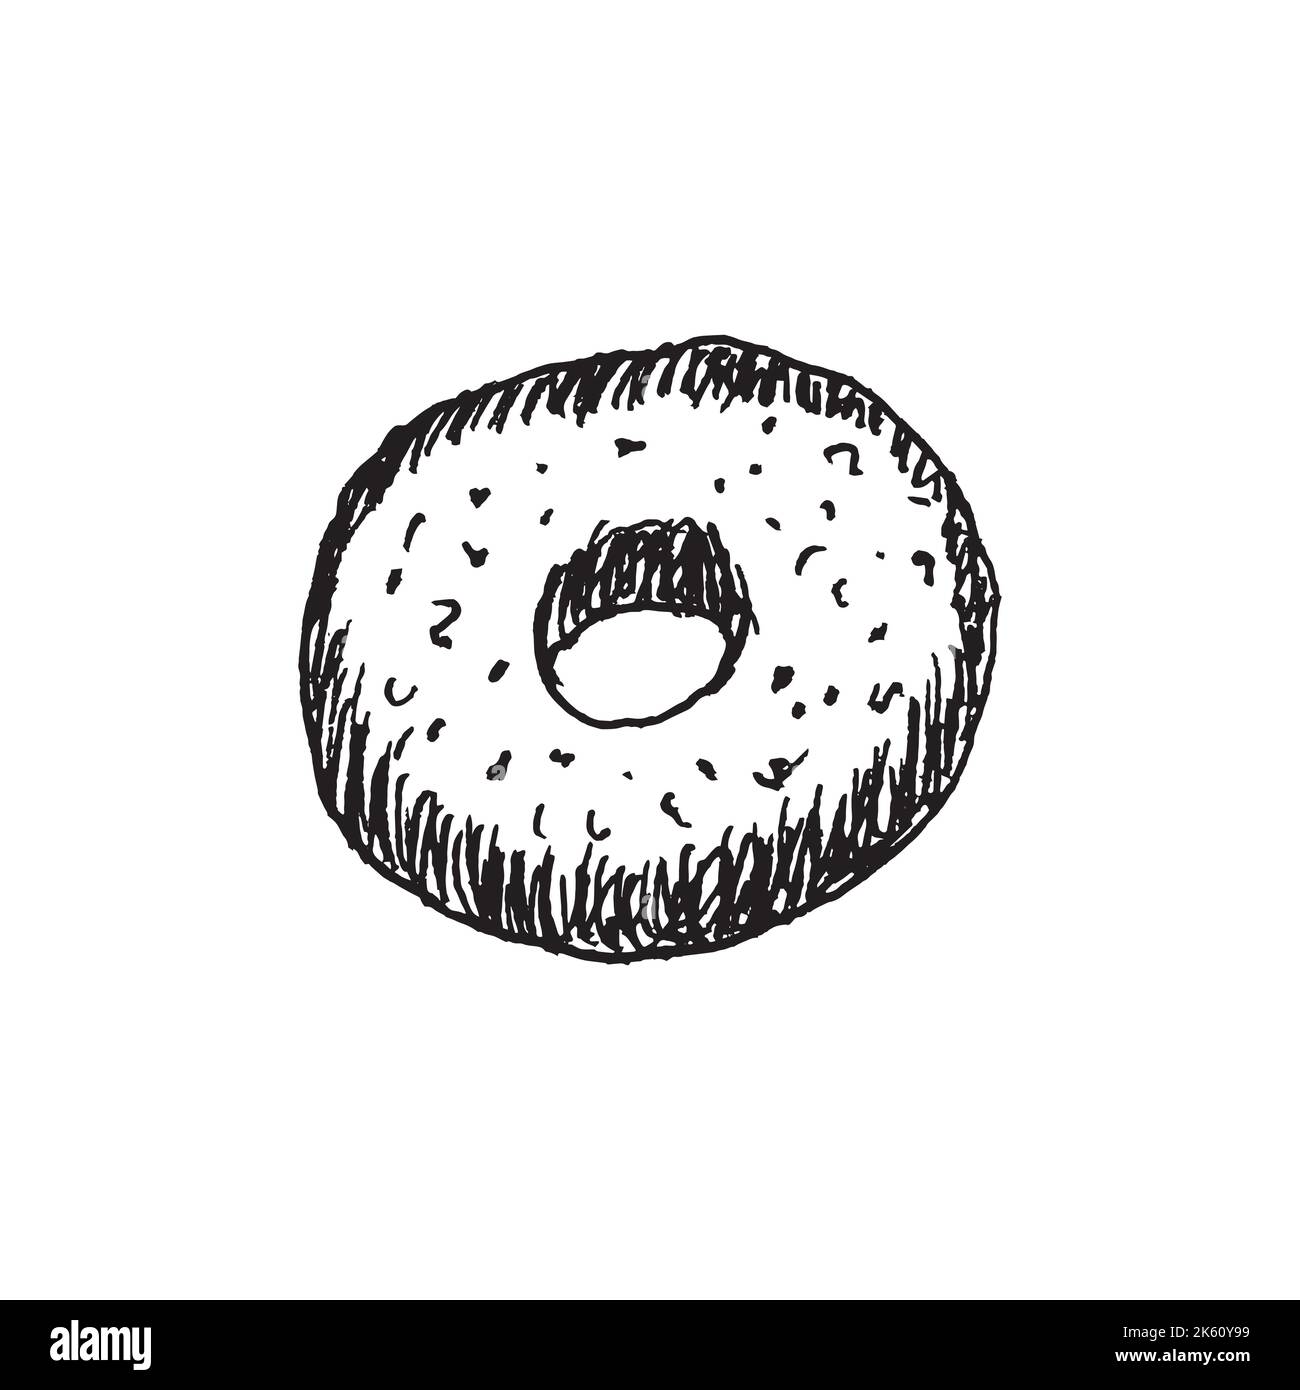 Fastfood-Donut. Skizze von köstlichen beliebten Speisen. Handgezeichnete Umrisse süße Kuchen für Typografie, Drucke, Malbuch, Textil. Stock Vektor